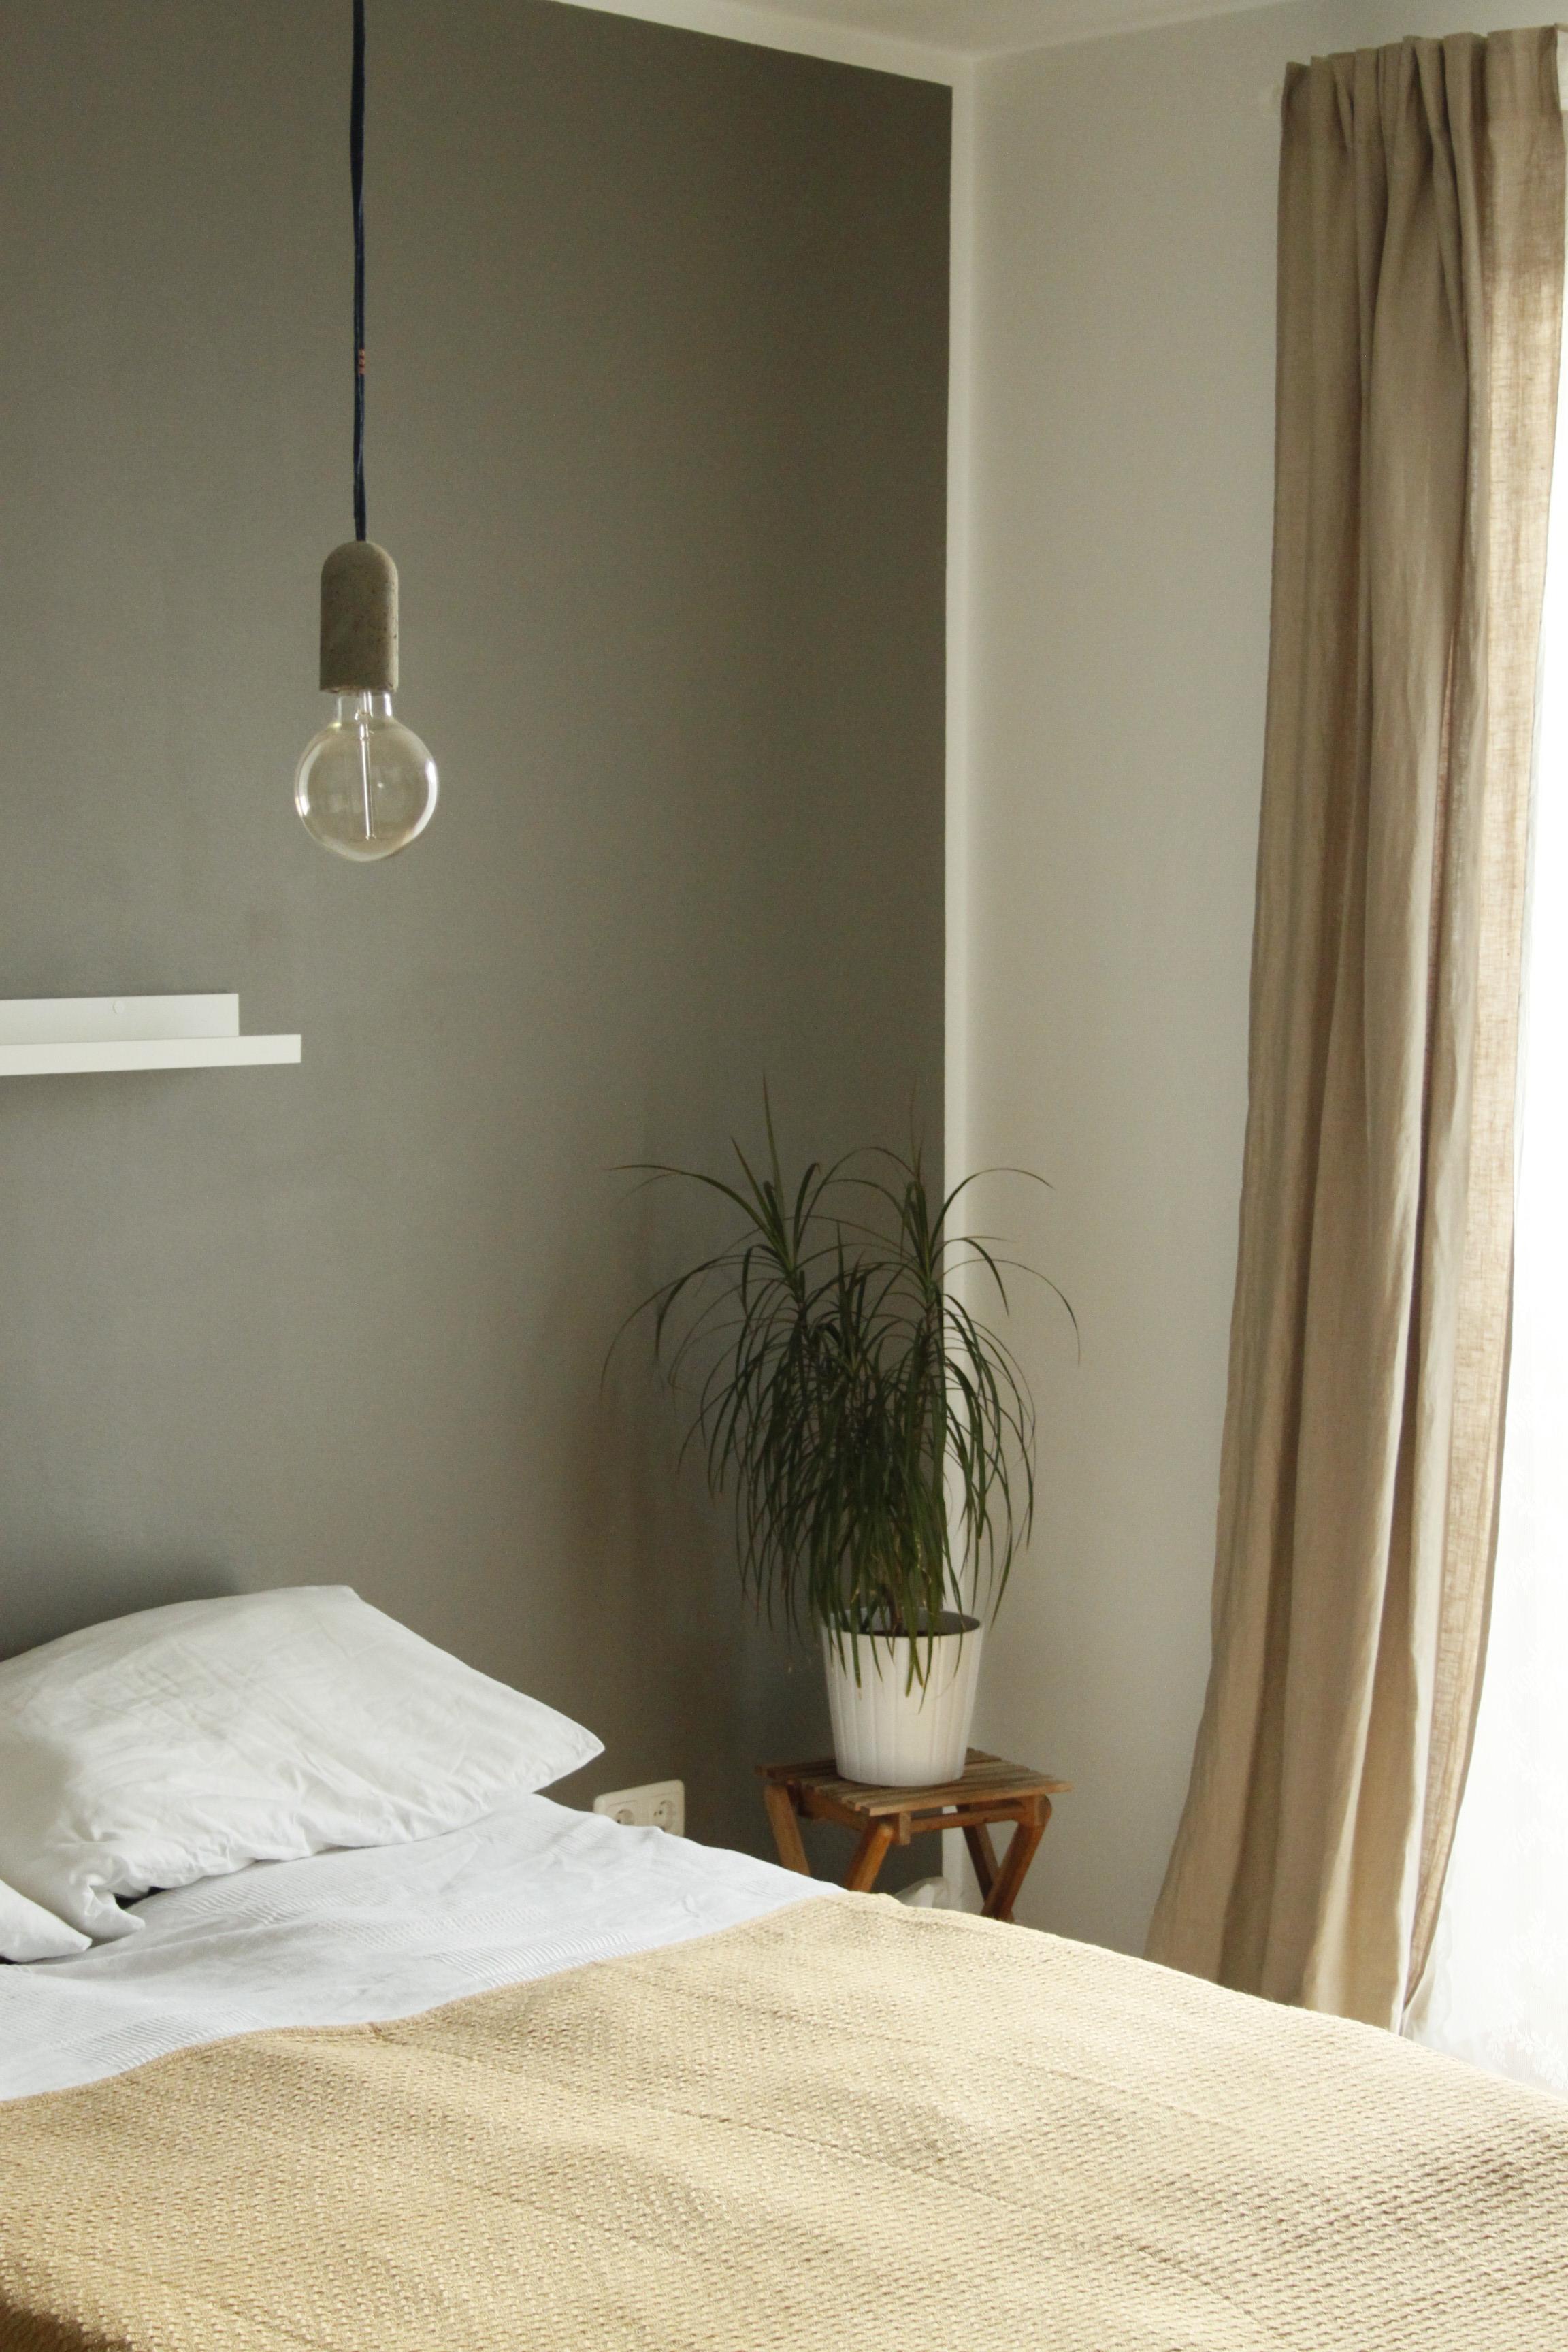 Neue #Betonlampe in unserem #Schlafzimmer. #natürlich #beige #inneneinrichtung #kleinewohnung